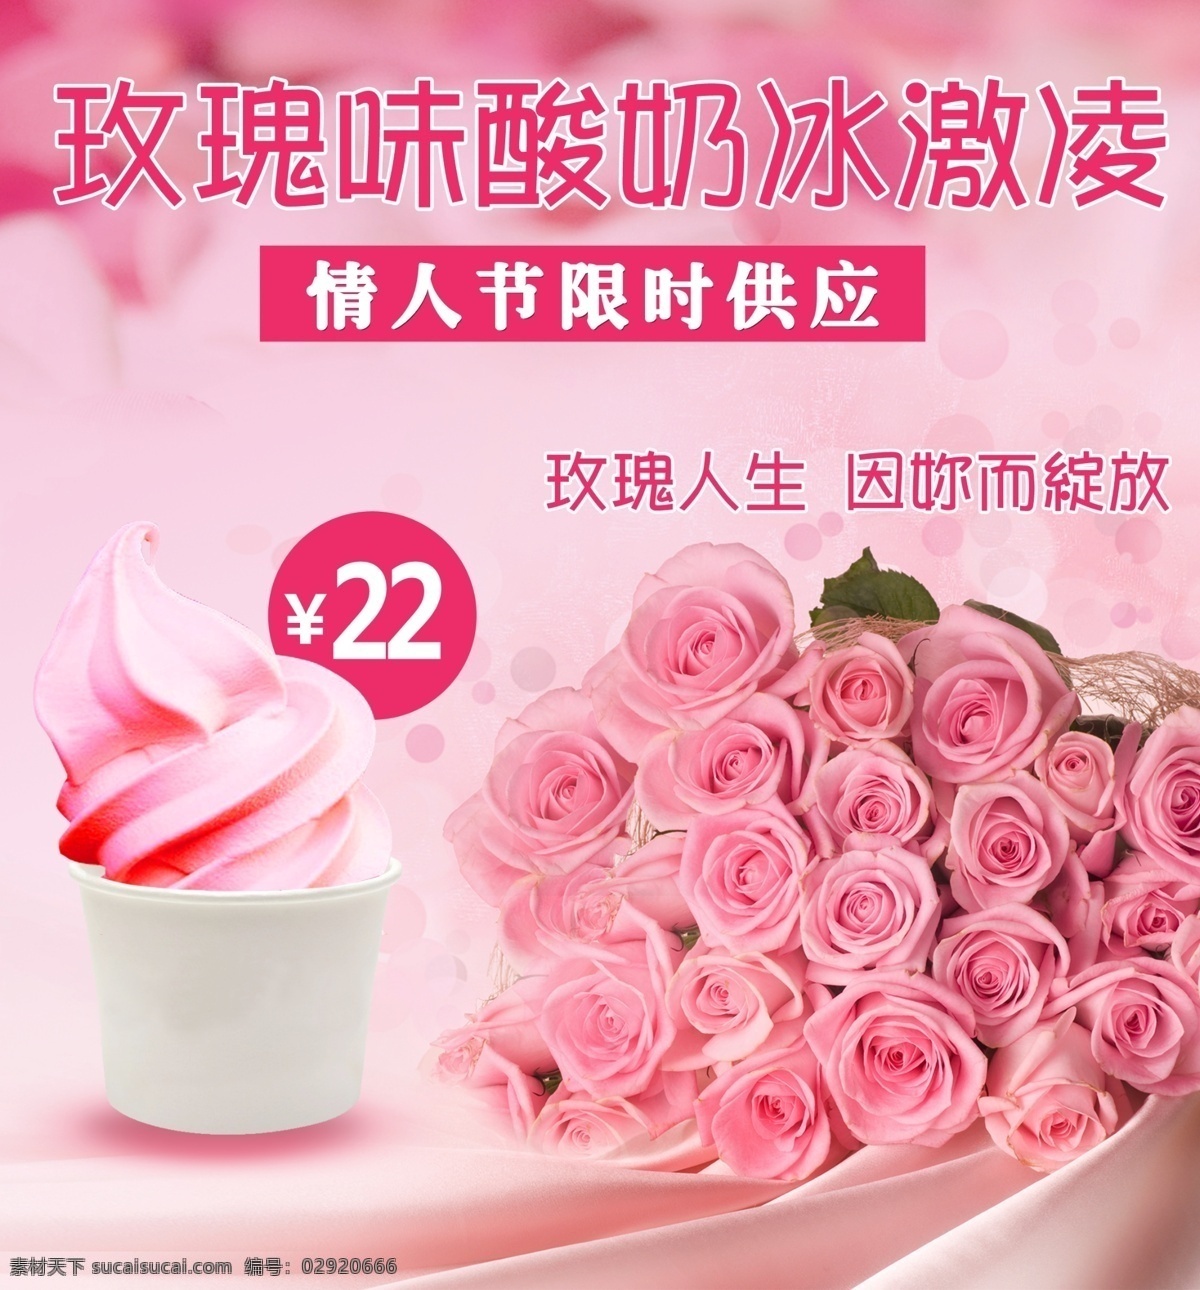 冰激凌 玫瑰直通车 商业设计 甜品海报 直通车 海报 商业 甜品 粉色